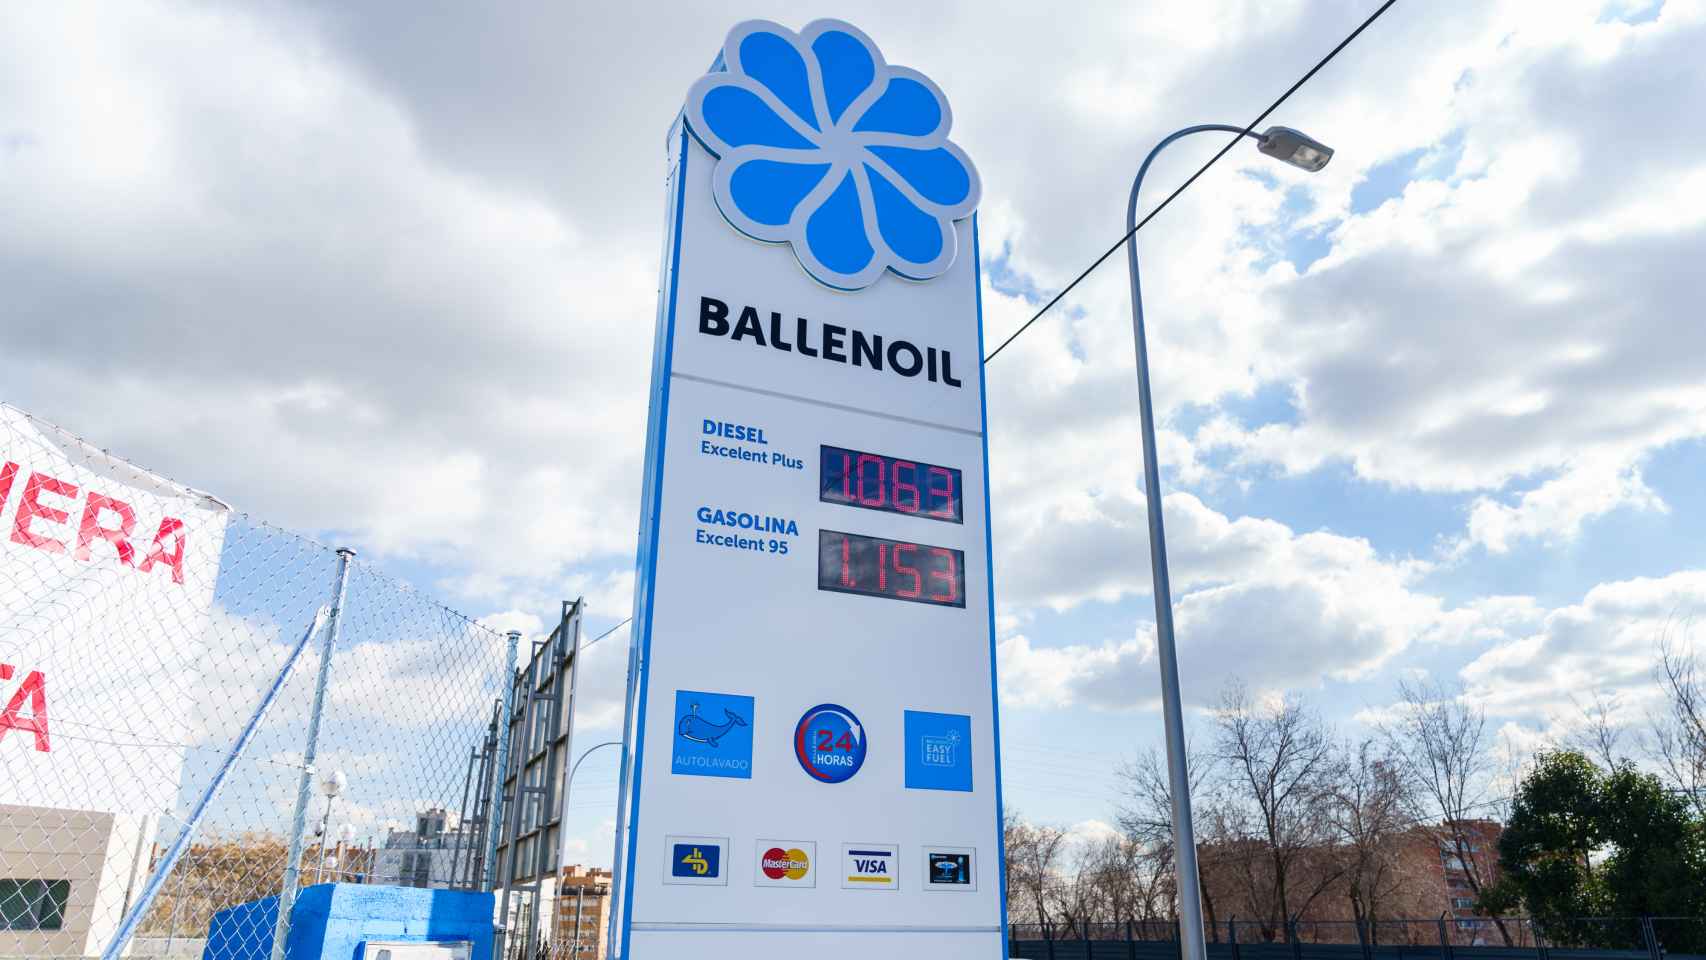 Iberdrola instalará puntos de recarga rápida de coches eléctricos en las estaciones Ballenoil